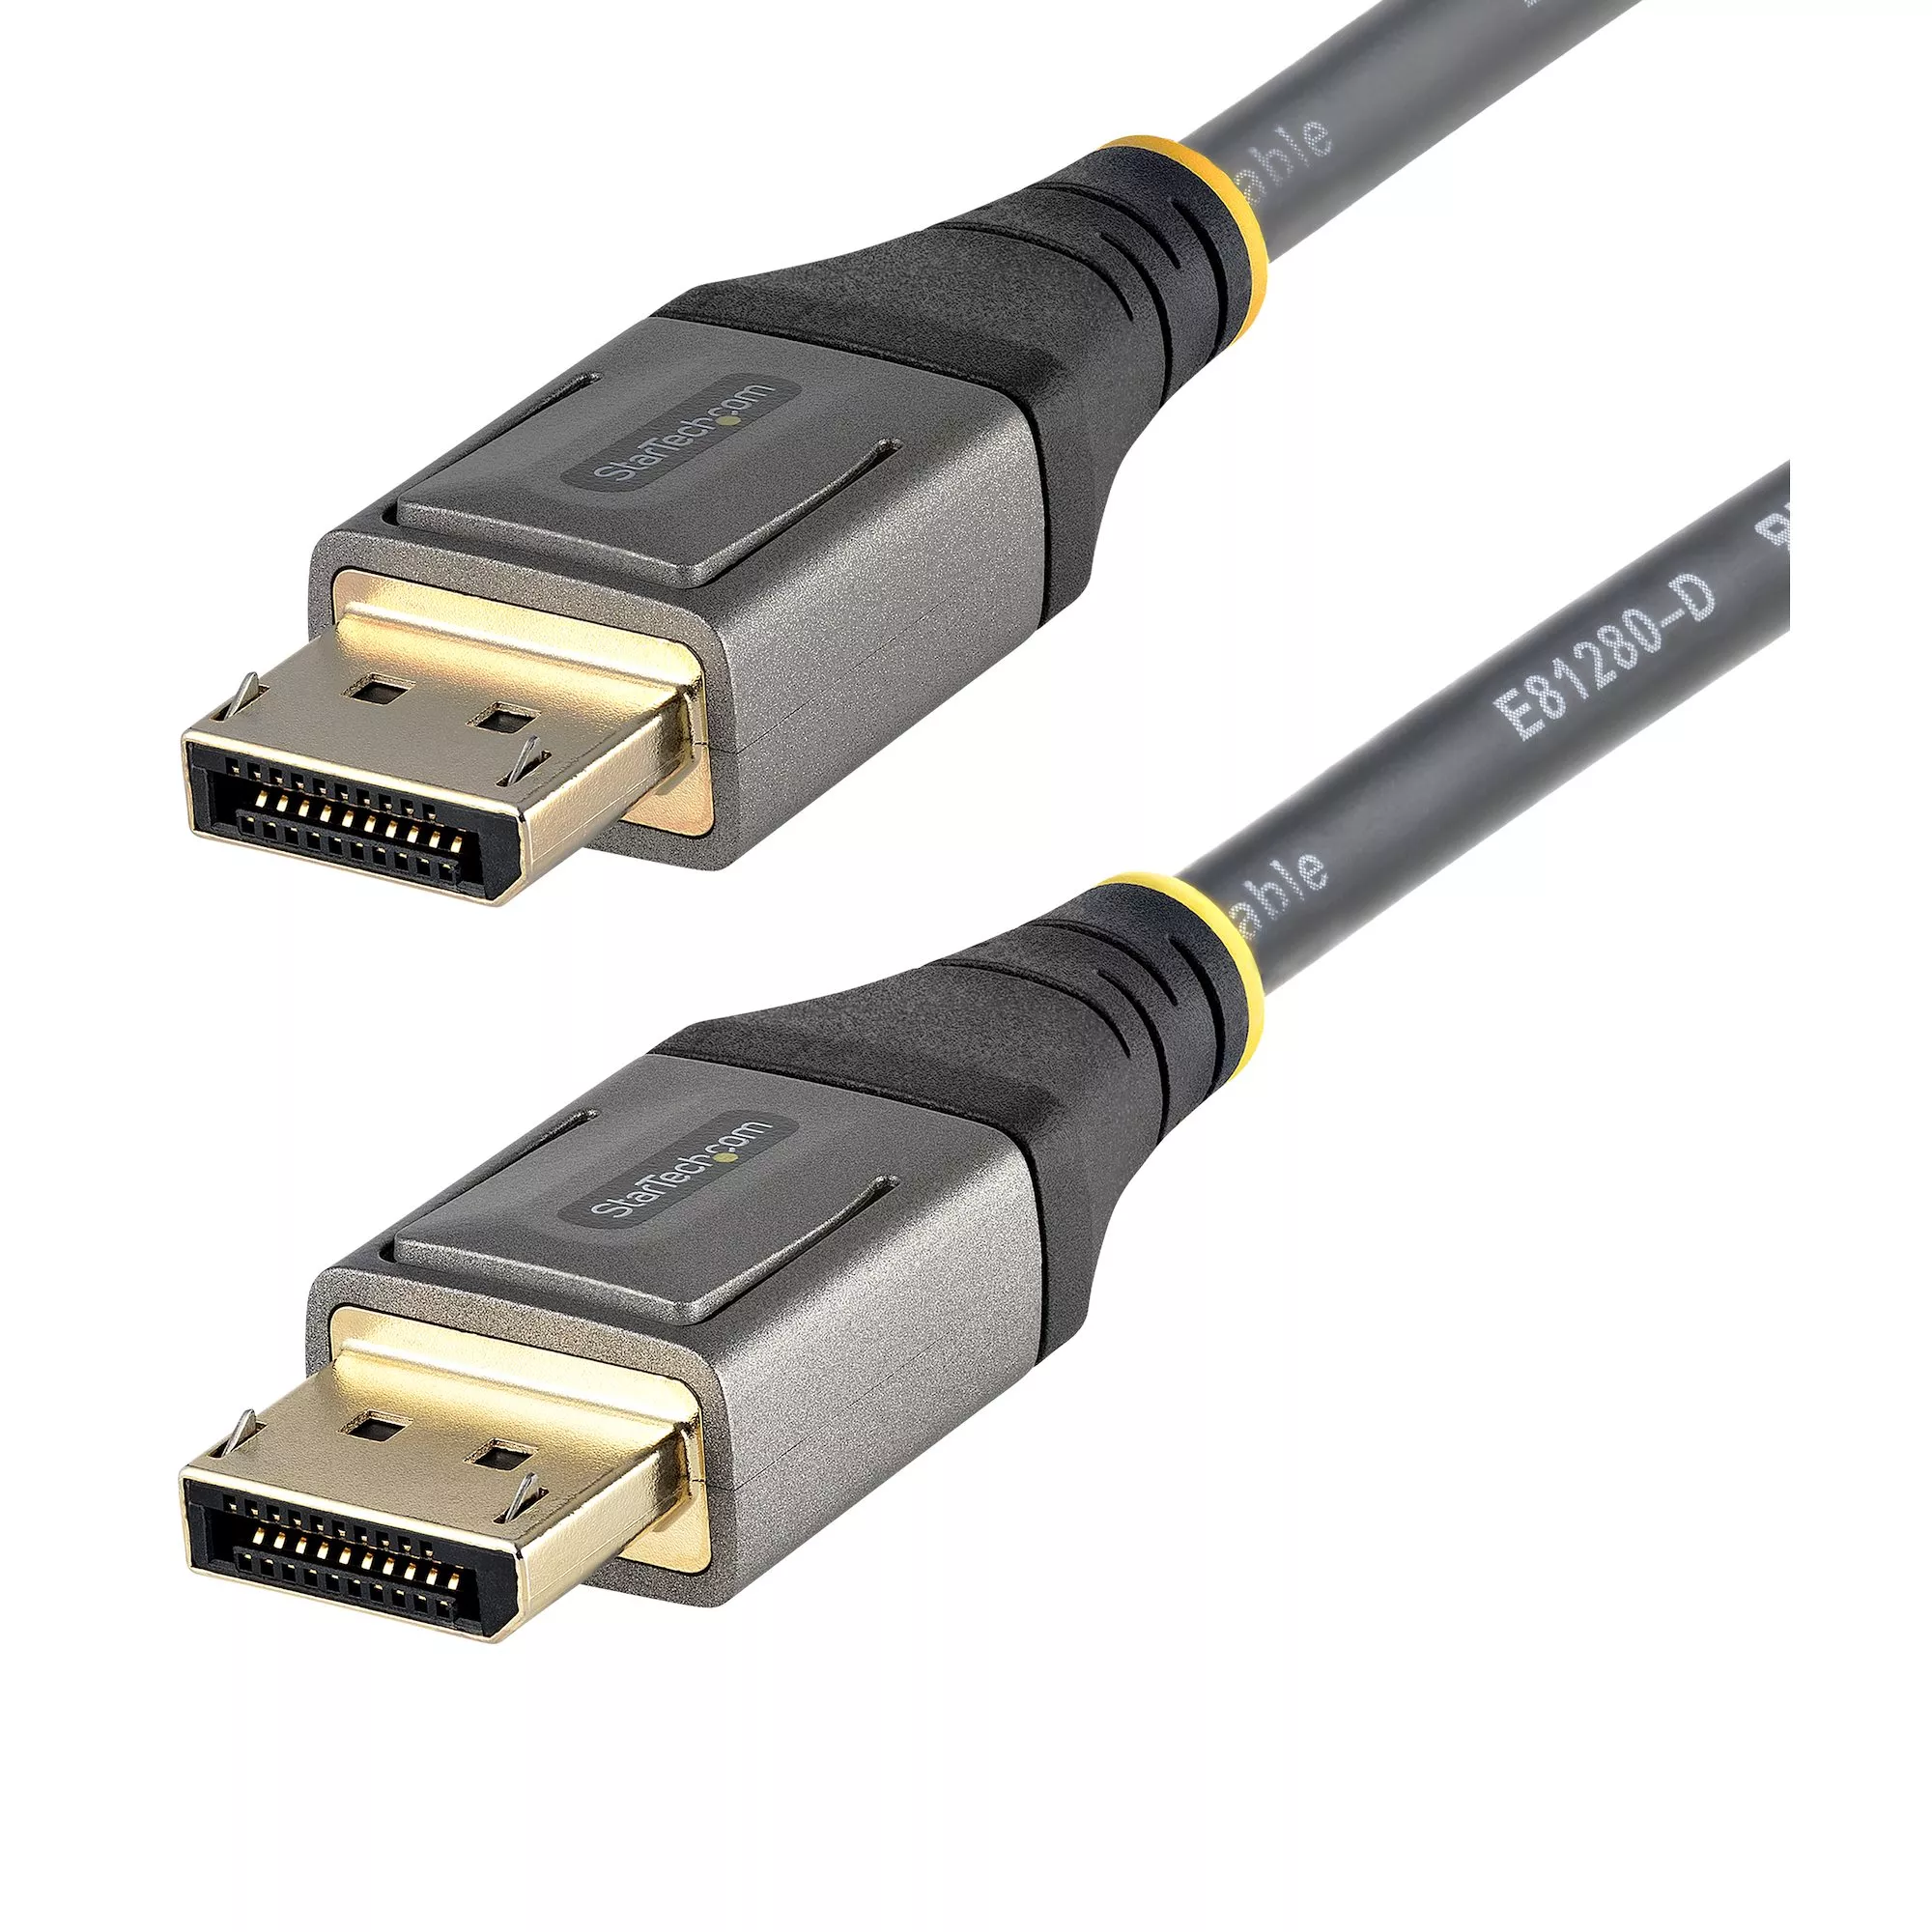 Achat StarTech.com Câble DisplayPort 1.4 Certifié VESA 4m - 8K au meilleur prix